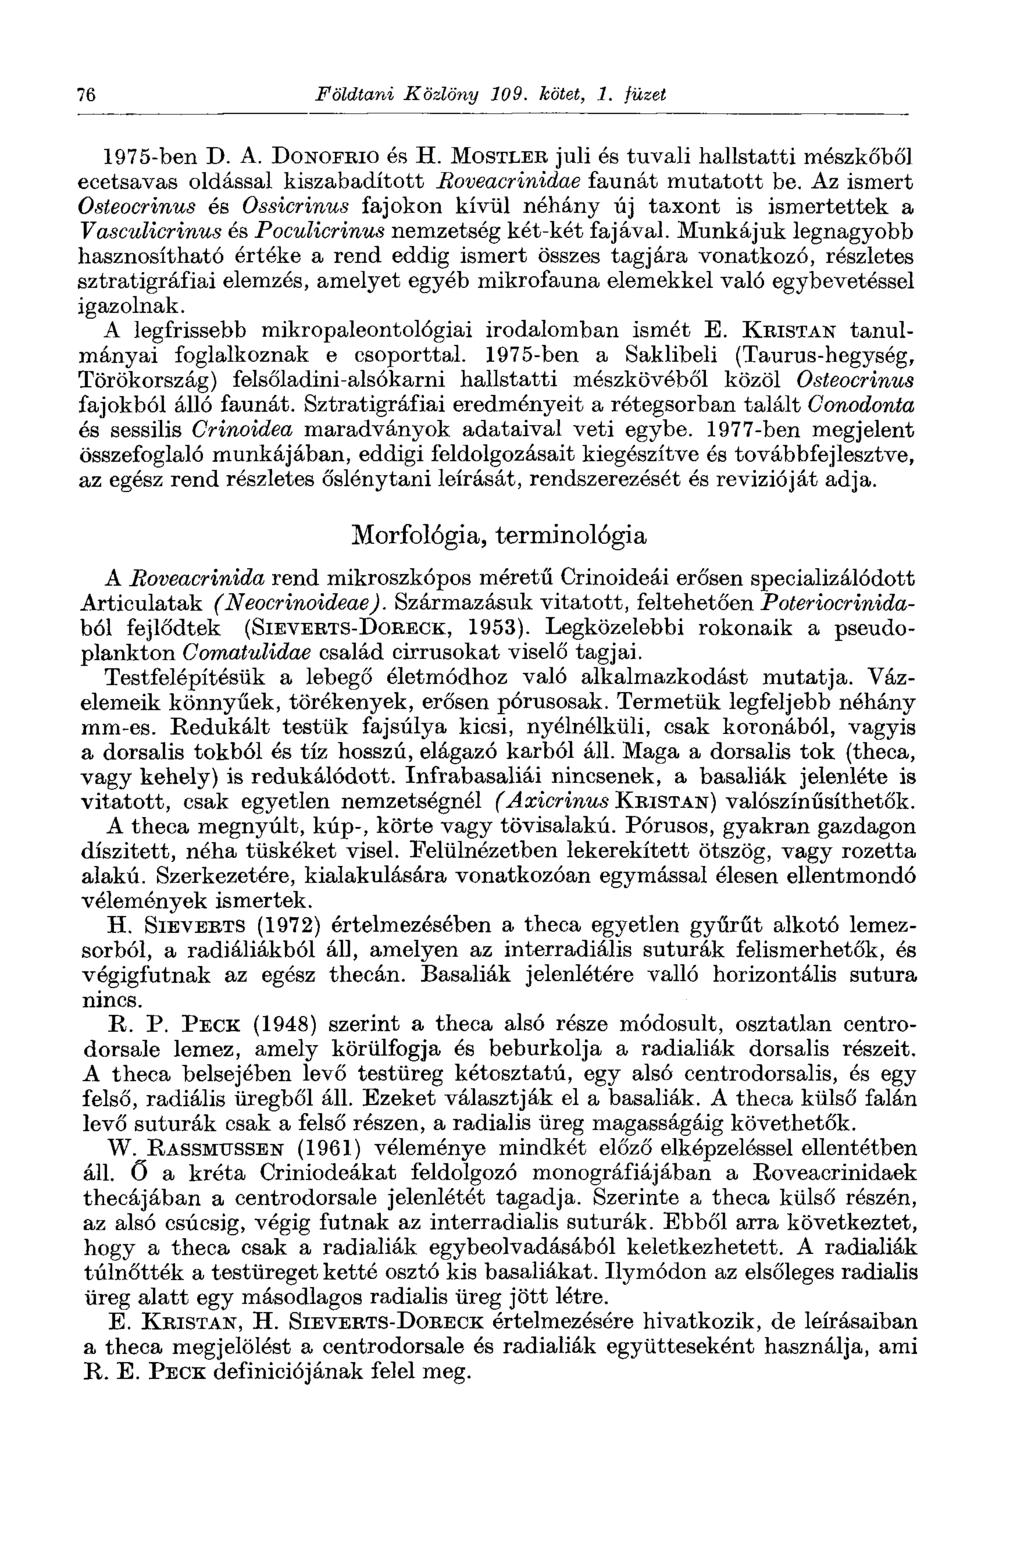 76 Földtani Közlöny 109. kötet, 1. füzet 1975-ben D. A. DONOFRIO és H. MOSTLER juli és tuvali hallstatti mészkőből ecetsavas oldással kiszabadított Boveacrinidae faunát mutatott be.